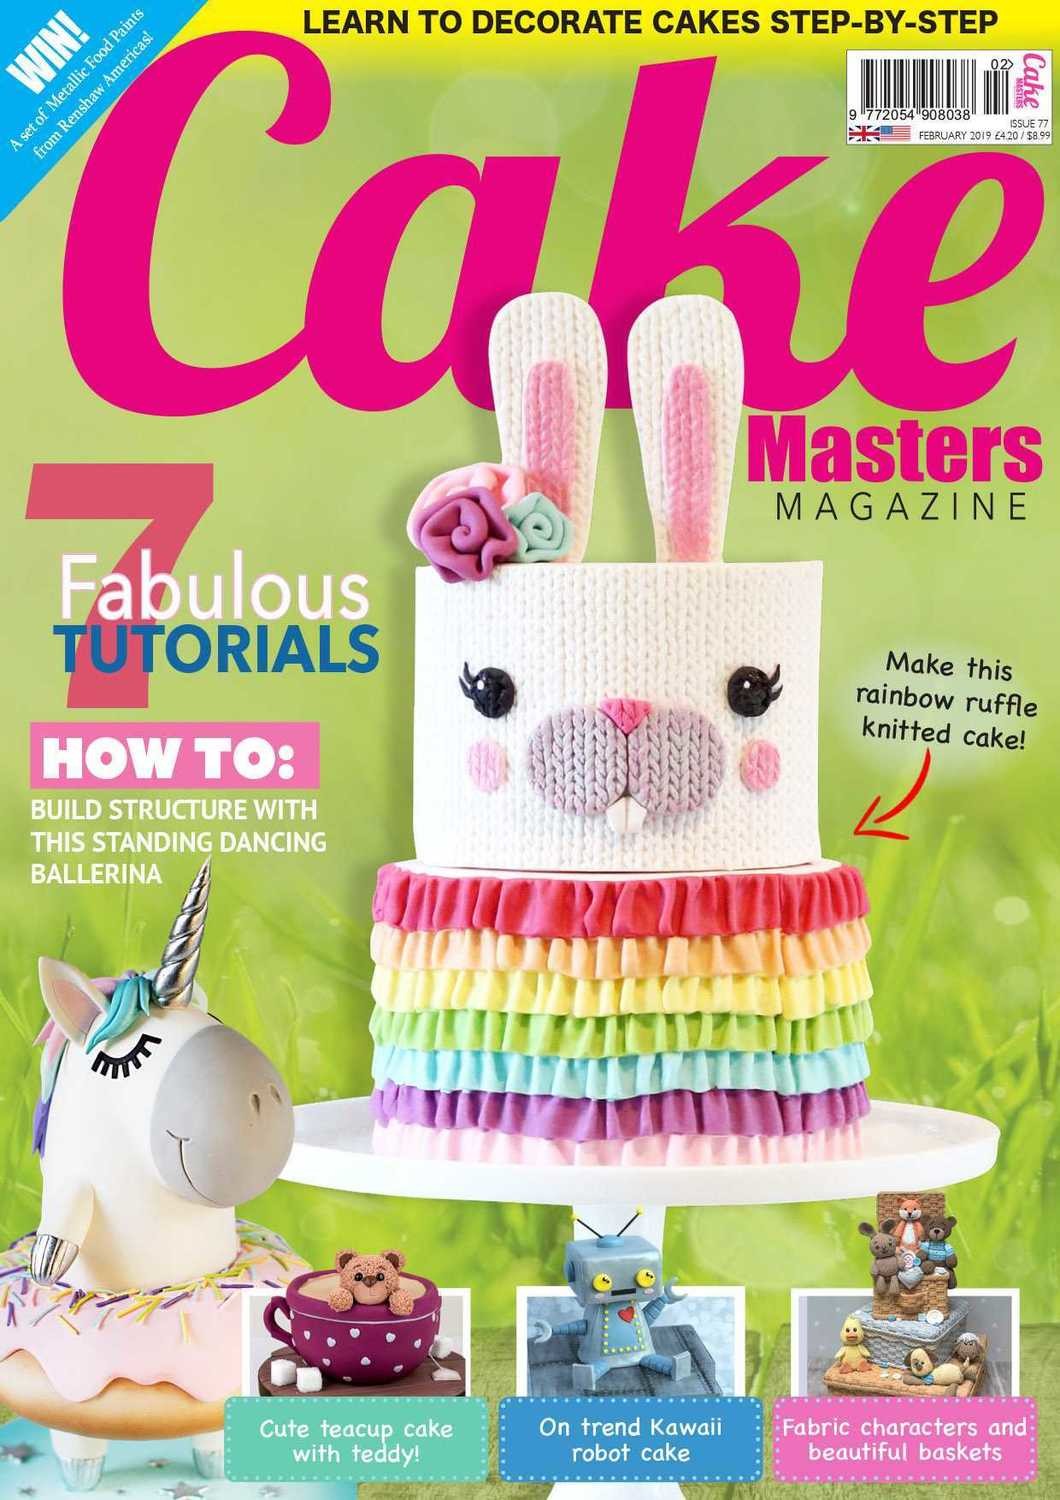 Cake Masters Magazine Feb. '19 Issue 77